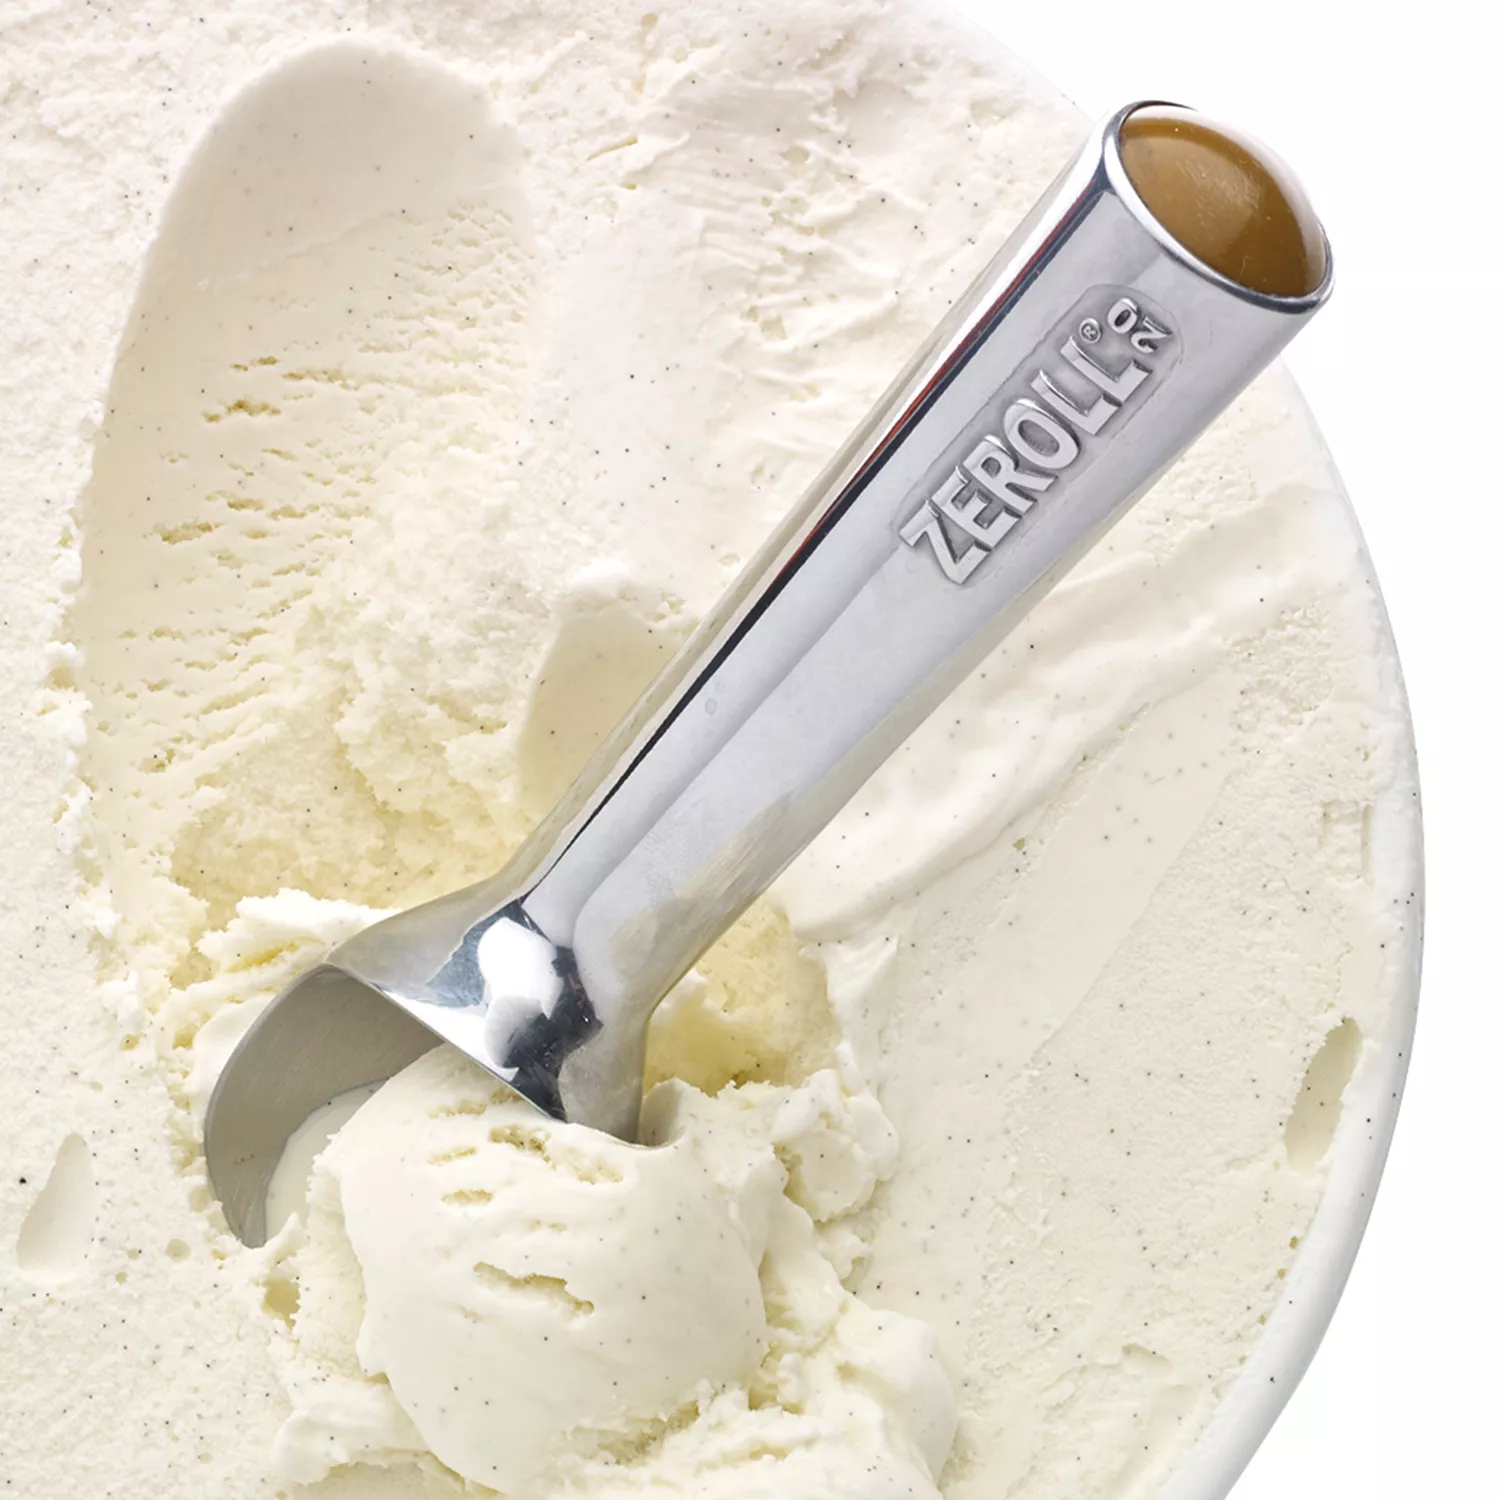 Heated Ice Cream Scoops : heated ice cream scoop